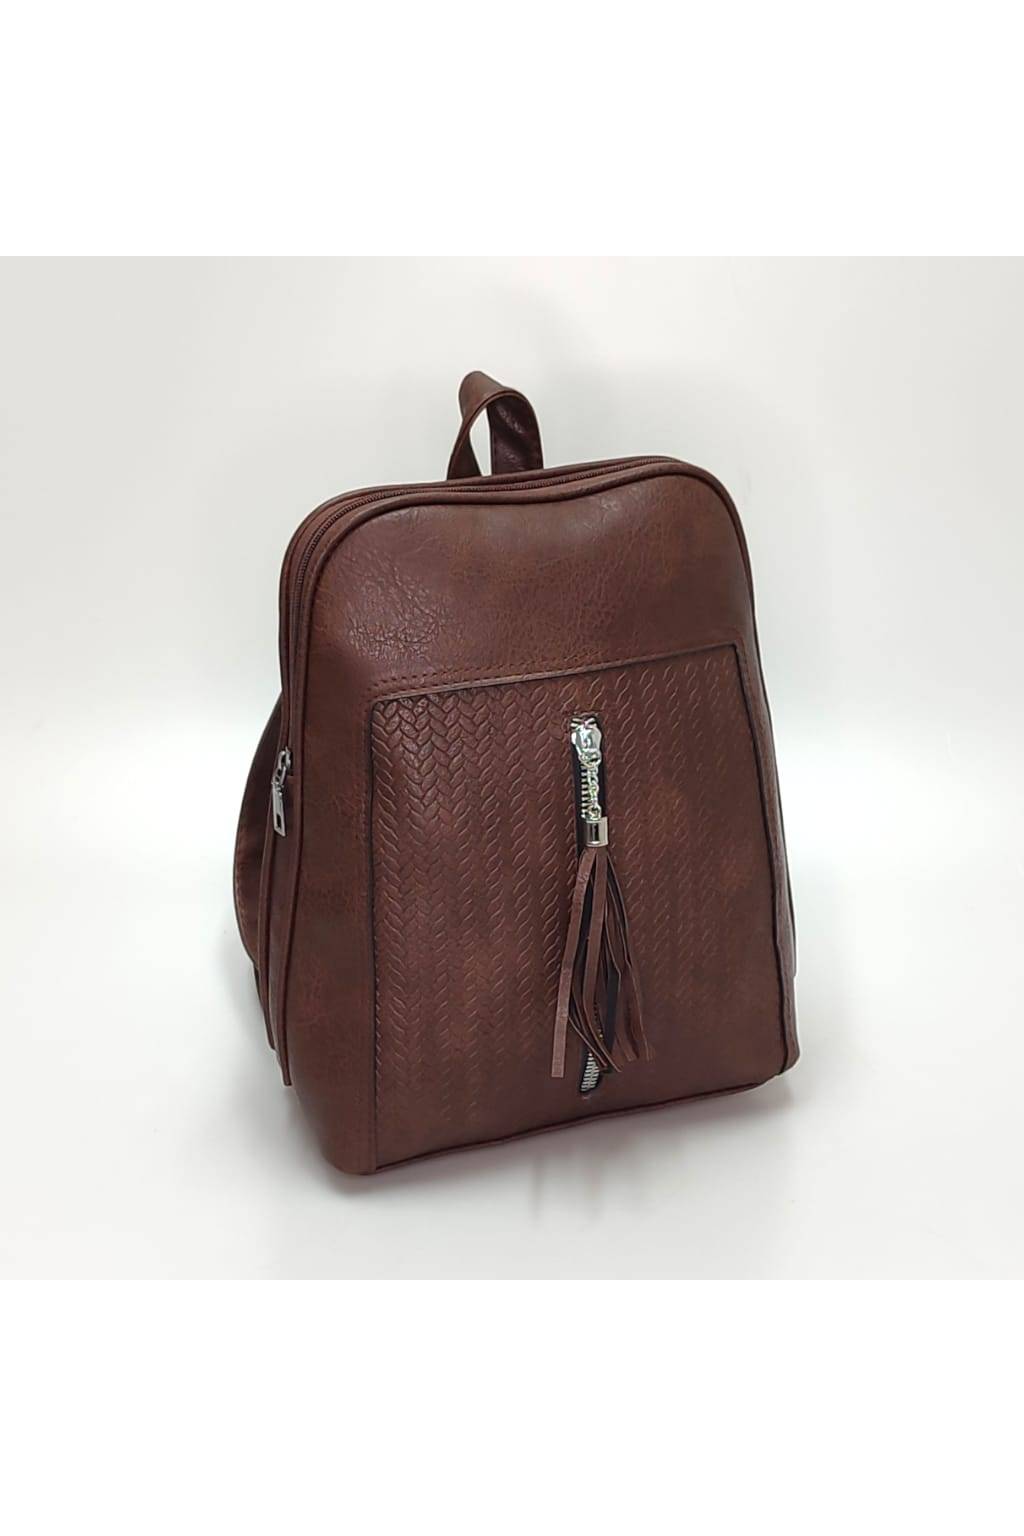 Dámsky ruksak 2548 čokoládový www.kabelky vypredaj (3)